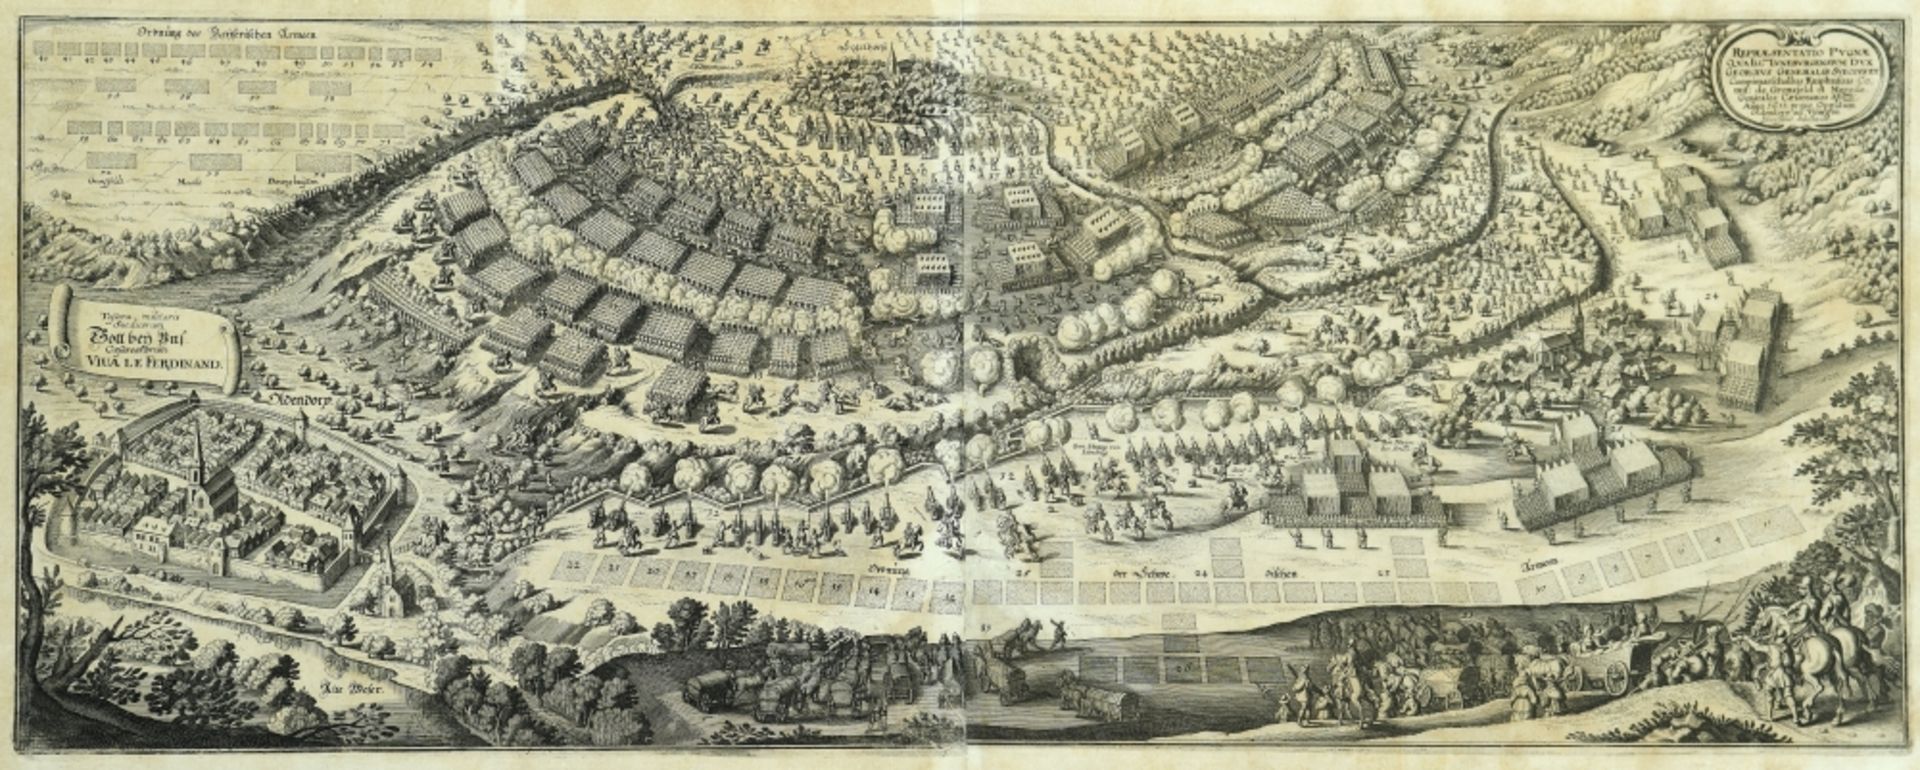 Hessisch Oldendorf - Schlachtaufstellung, 1633 - Image 2 of 2